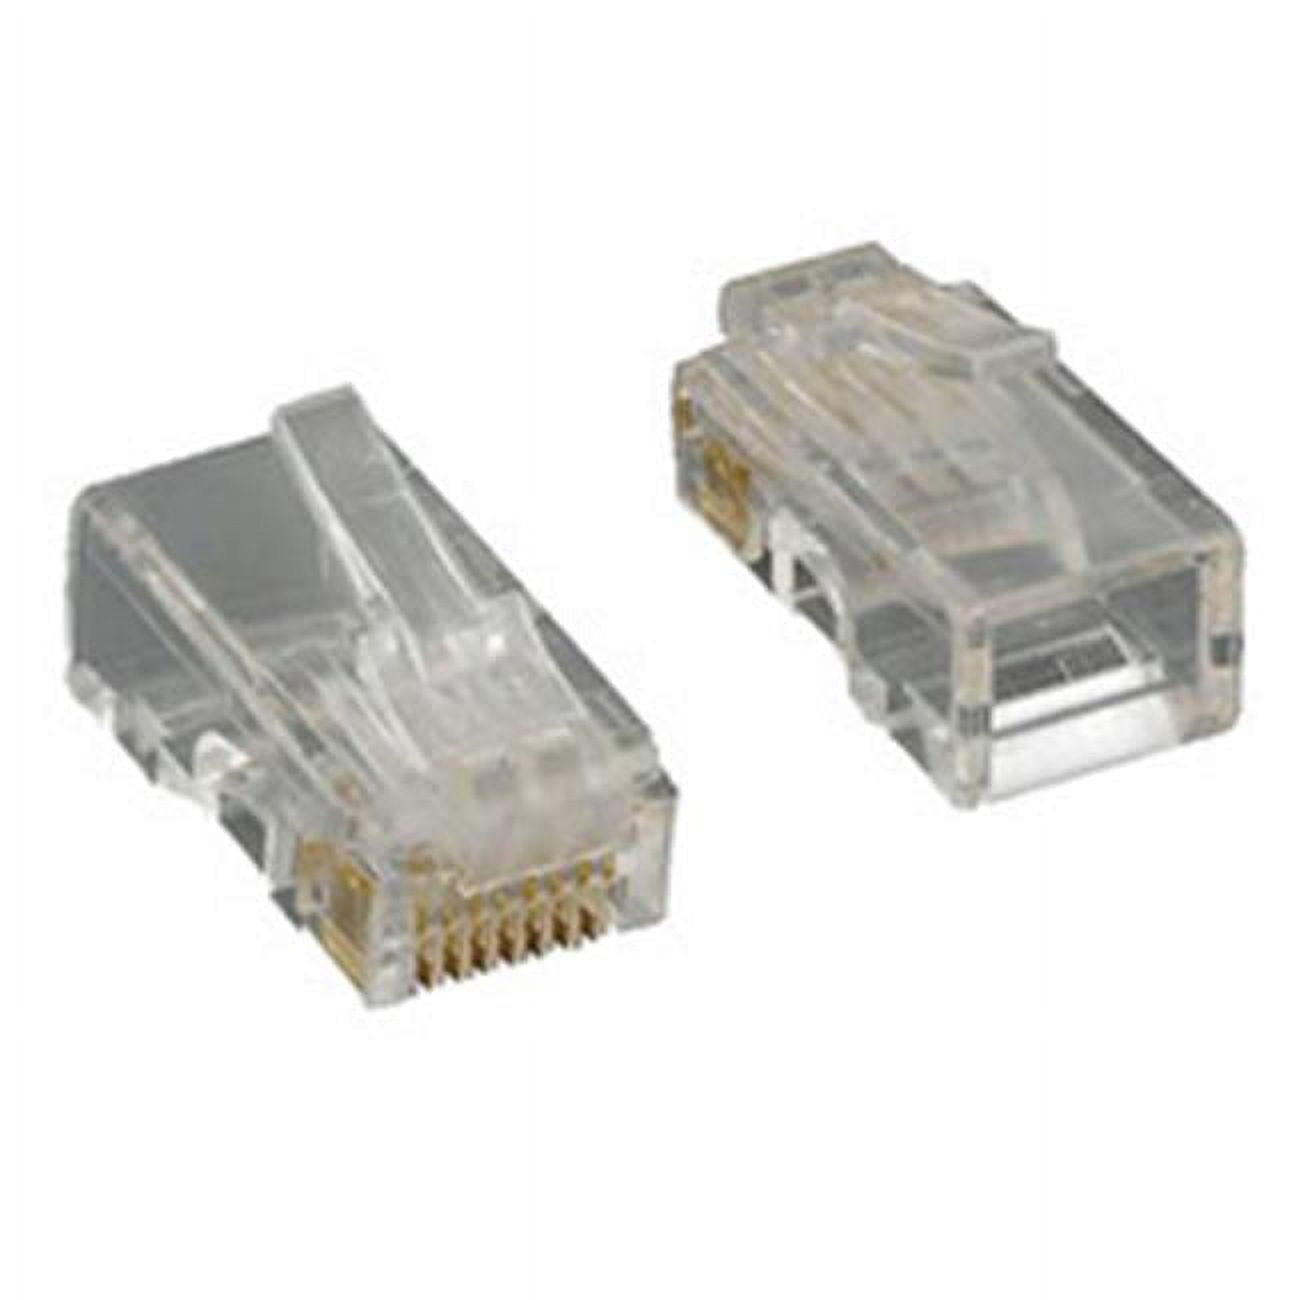 Picture of Cablewholesale 31D0-511HD Cat5E RjJ45 8P8C Crimp Connectors for Solid & Stranded Cable - 100 Piece